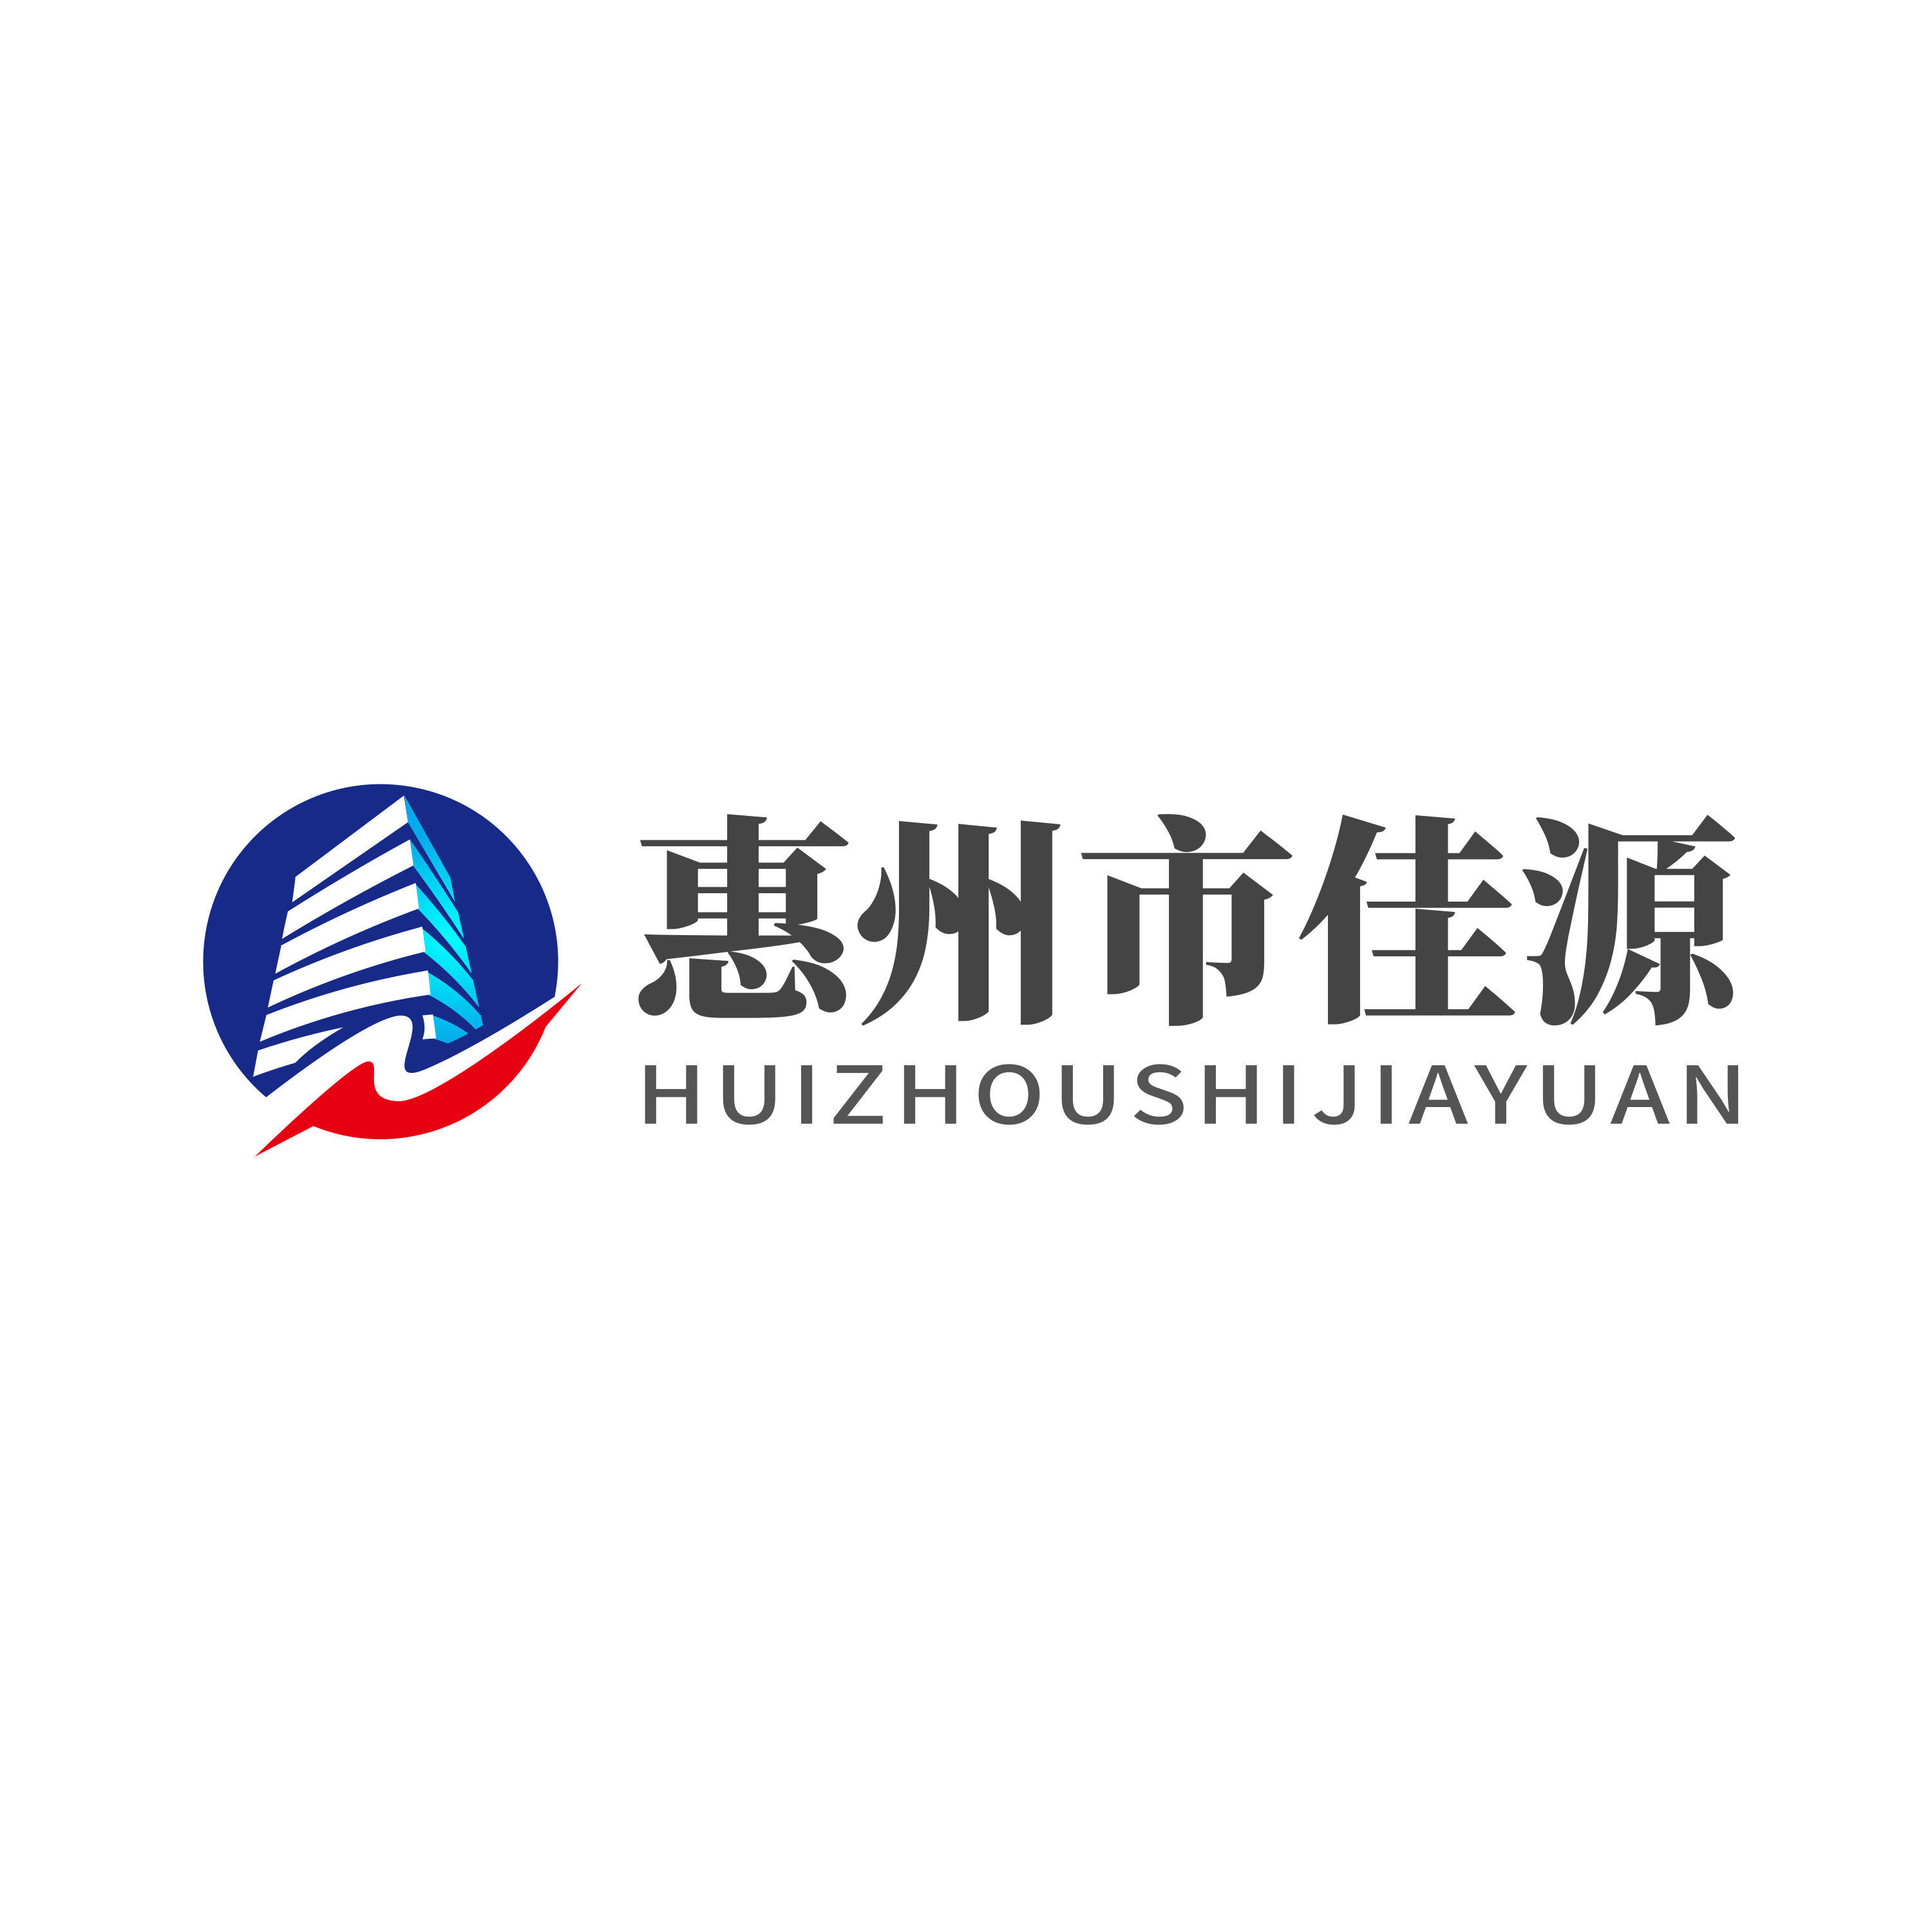 惠州市佳源工程咨询有限公司 logo